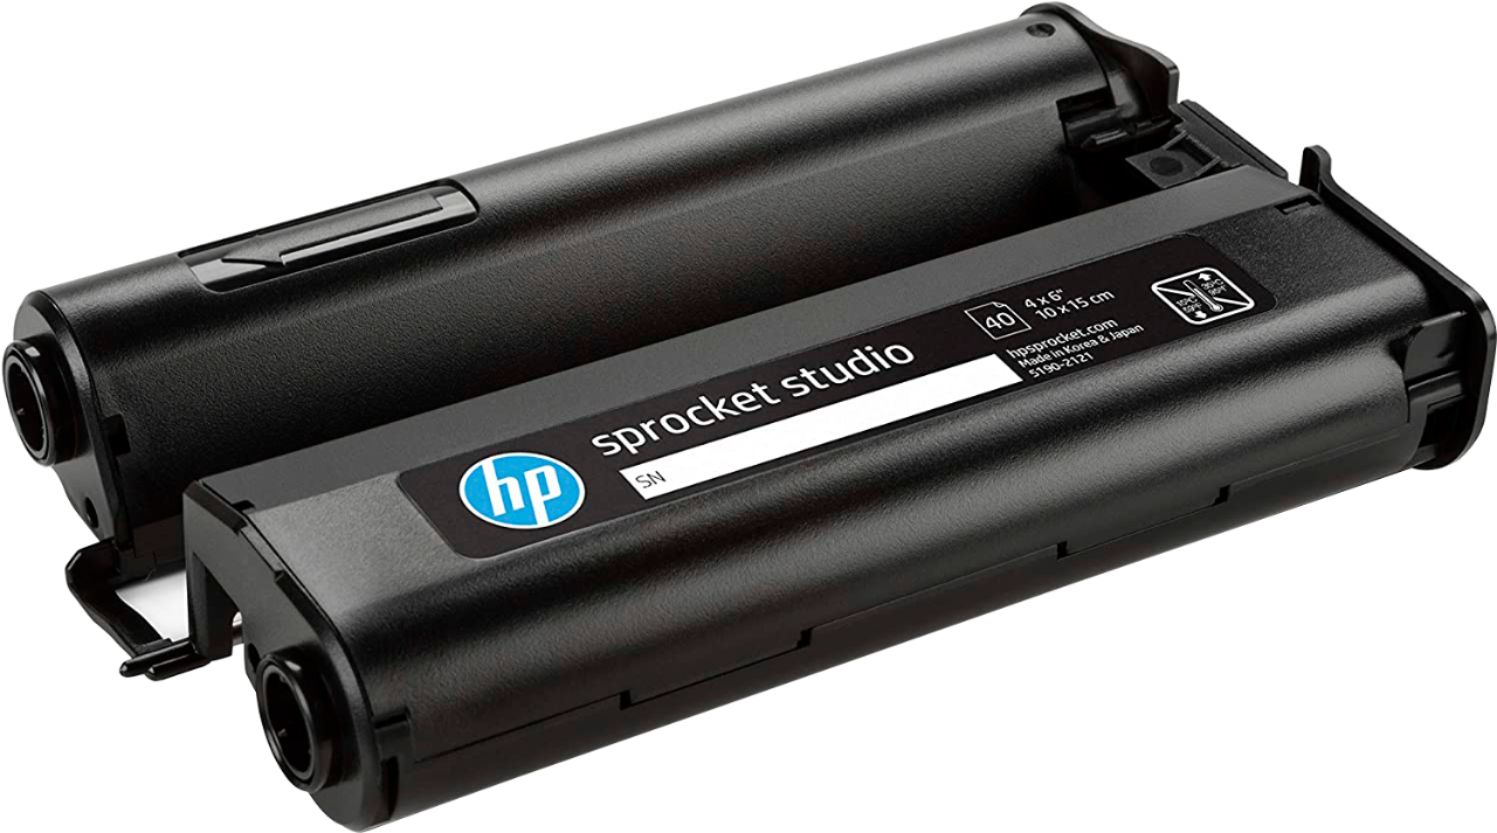 HP sprocket plus - 20 papiers photo adhésifs 5,8 x 8,7 cm